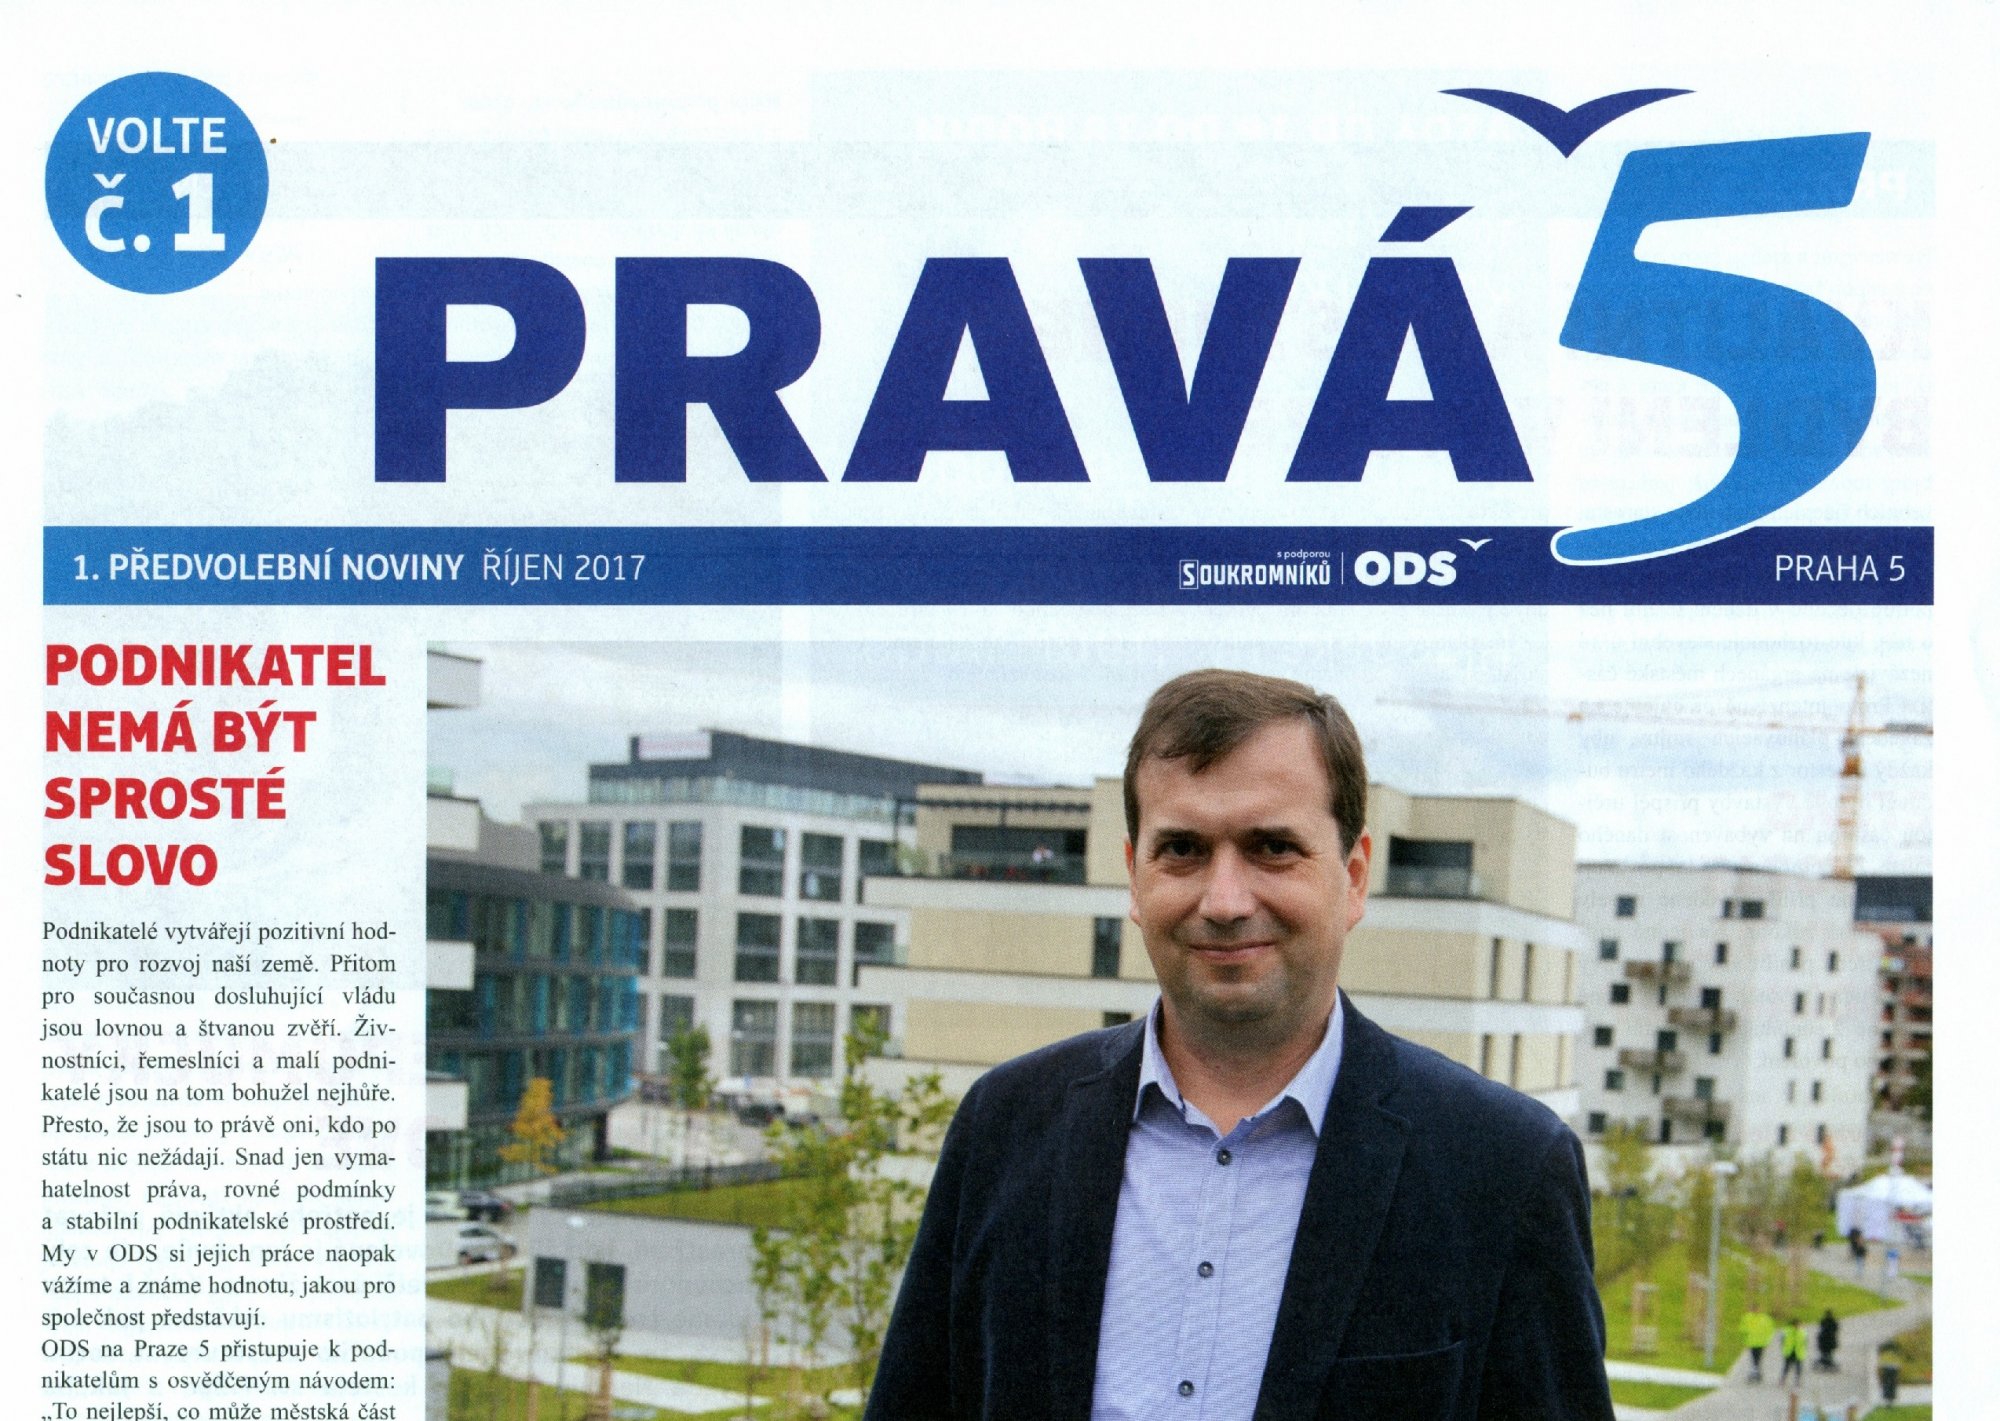 ODS Praha 5 : Vyšlo nové číslo časopisu Pravá 5